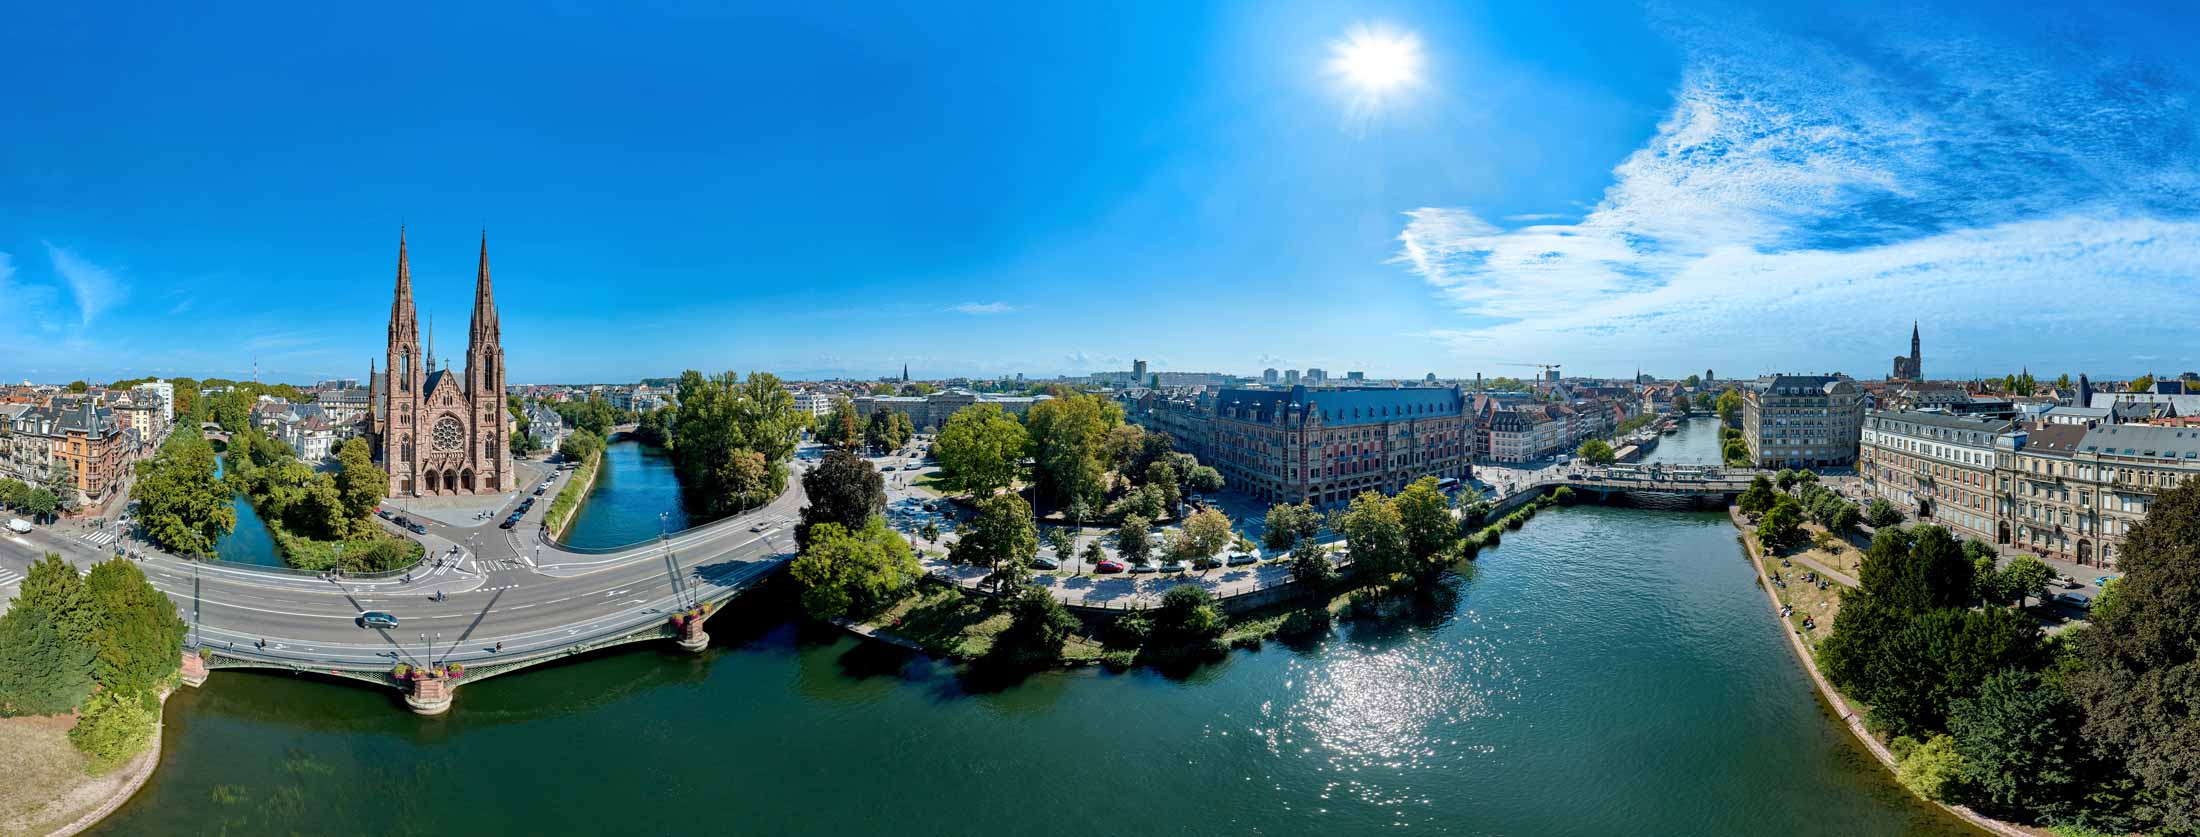 Panoramique d'urbanisme réalisé par drone du quartier du Palais Universitaire de Strasbourg